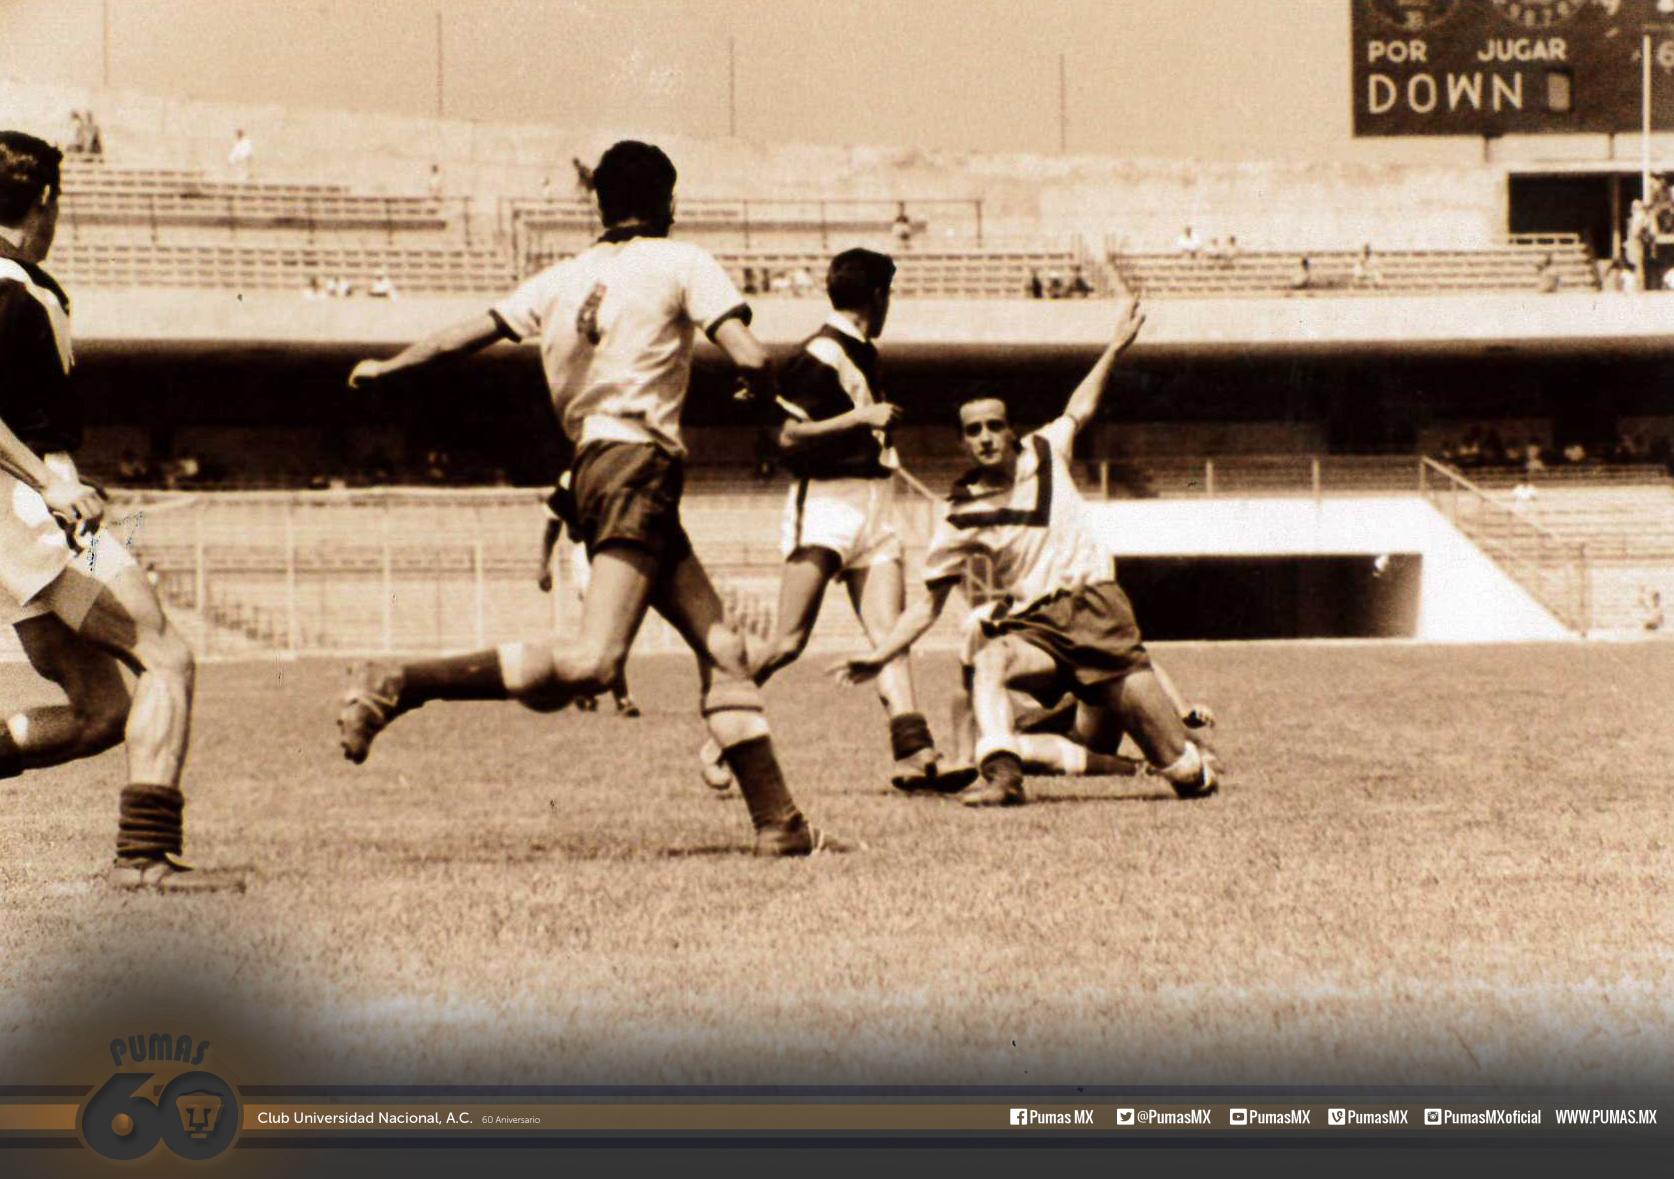 PUMAS en Twitter: "1954, nuestros Pumas iniciaban su historia en el futbol profesional la división #SoyDePumas #Pumas60 http://t.co/vDdynUWzJN" / Twitter